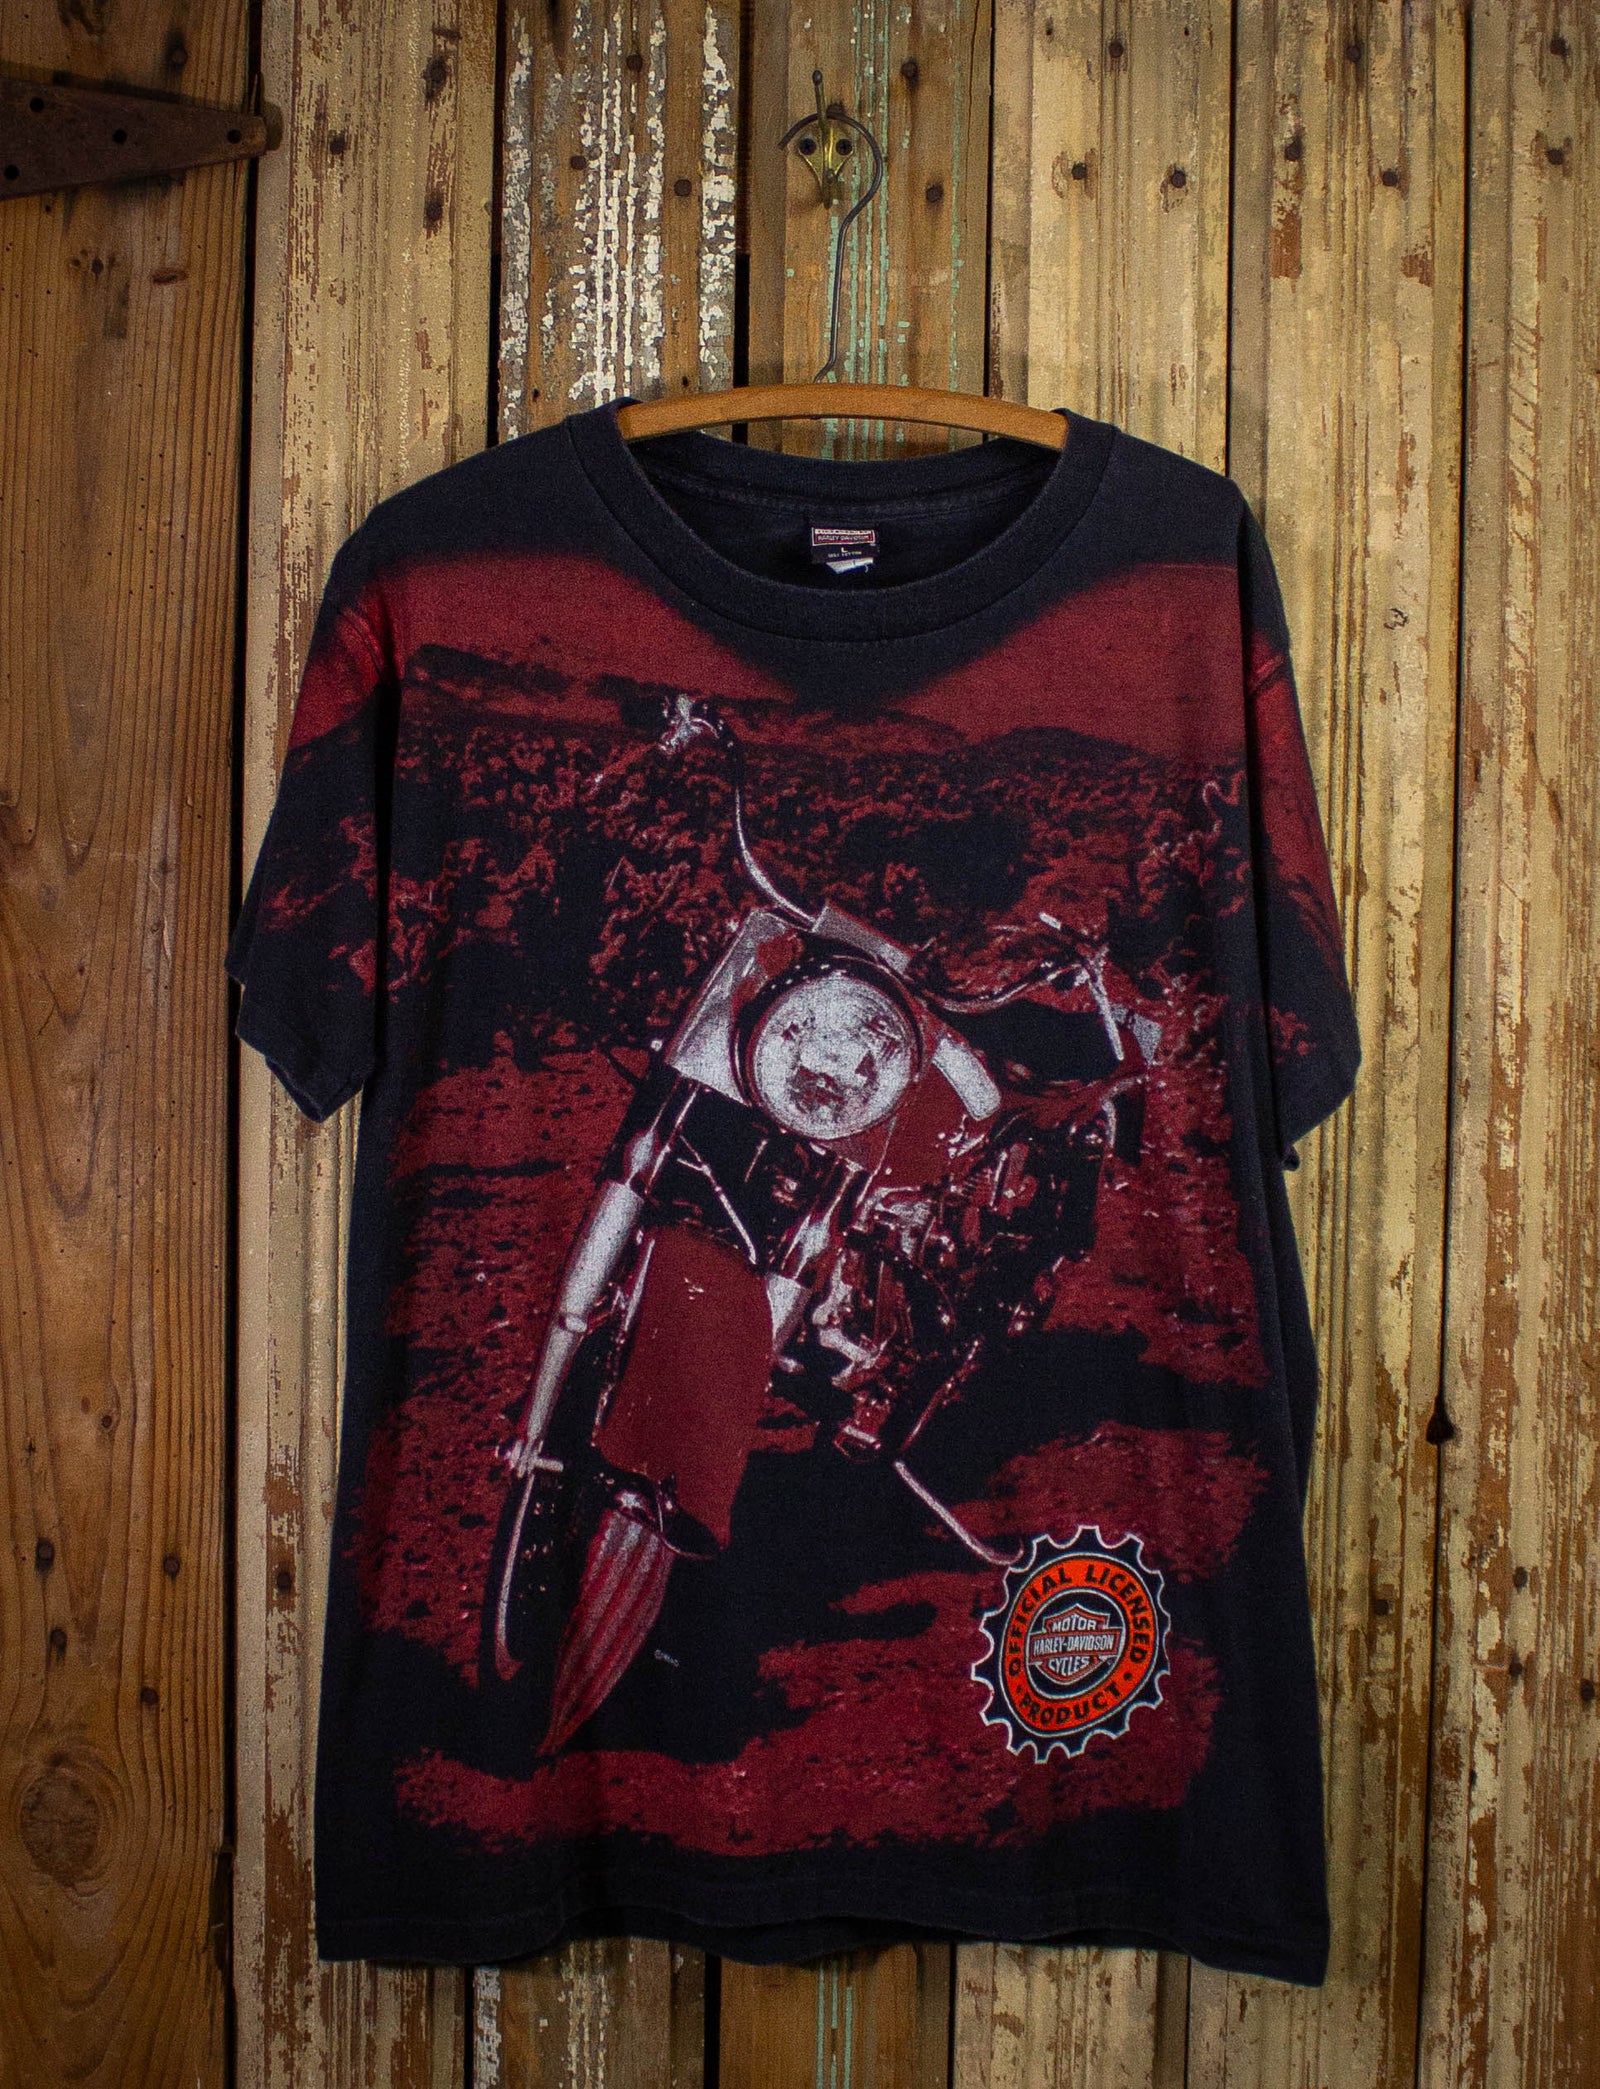 Vintage Harley Davidson AOP Bike Image Graphic T Shirt 1996 Black Large